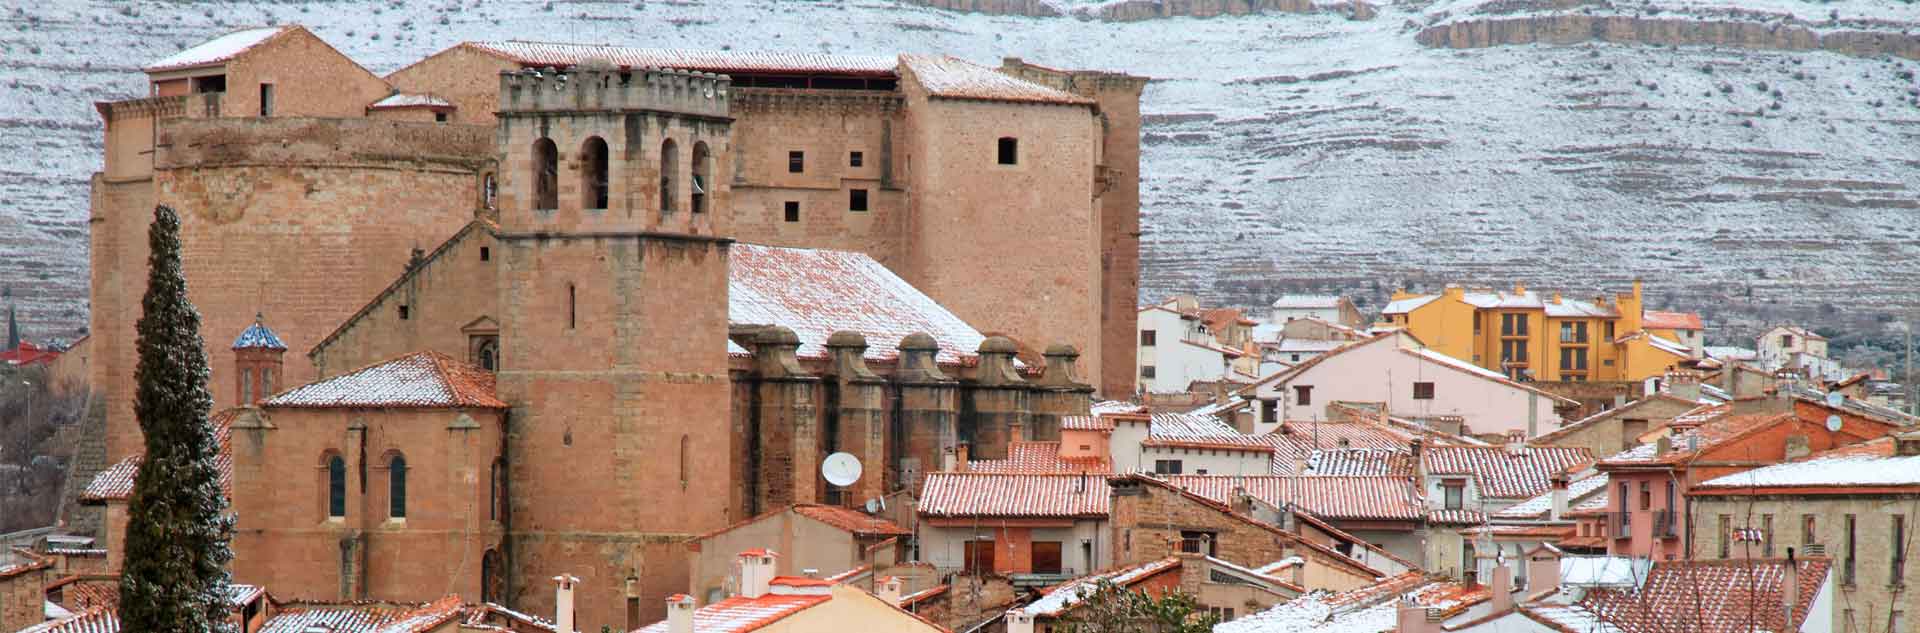 Mora de Rubielos (Teruel) bajo un manto de nieve